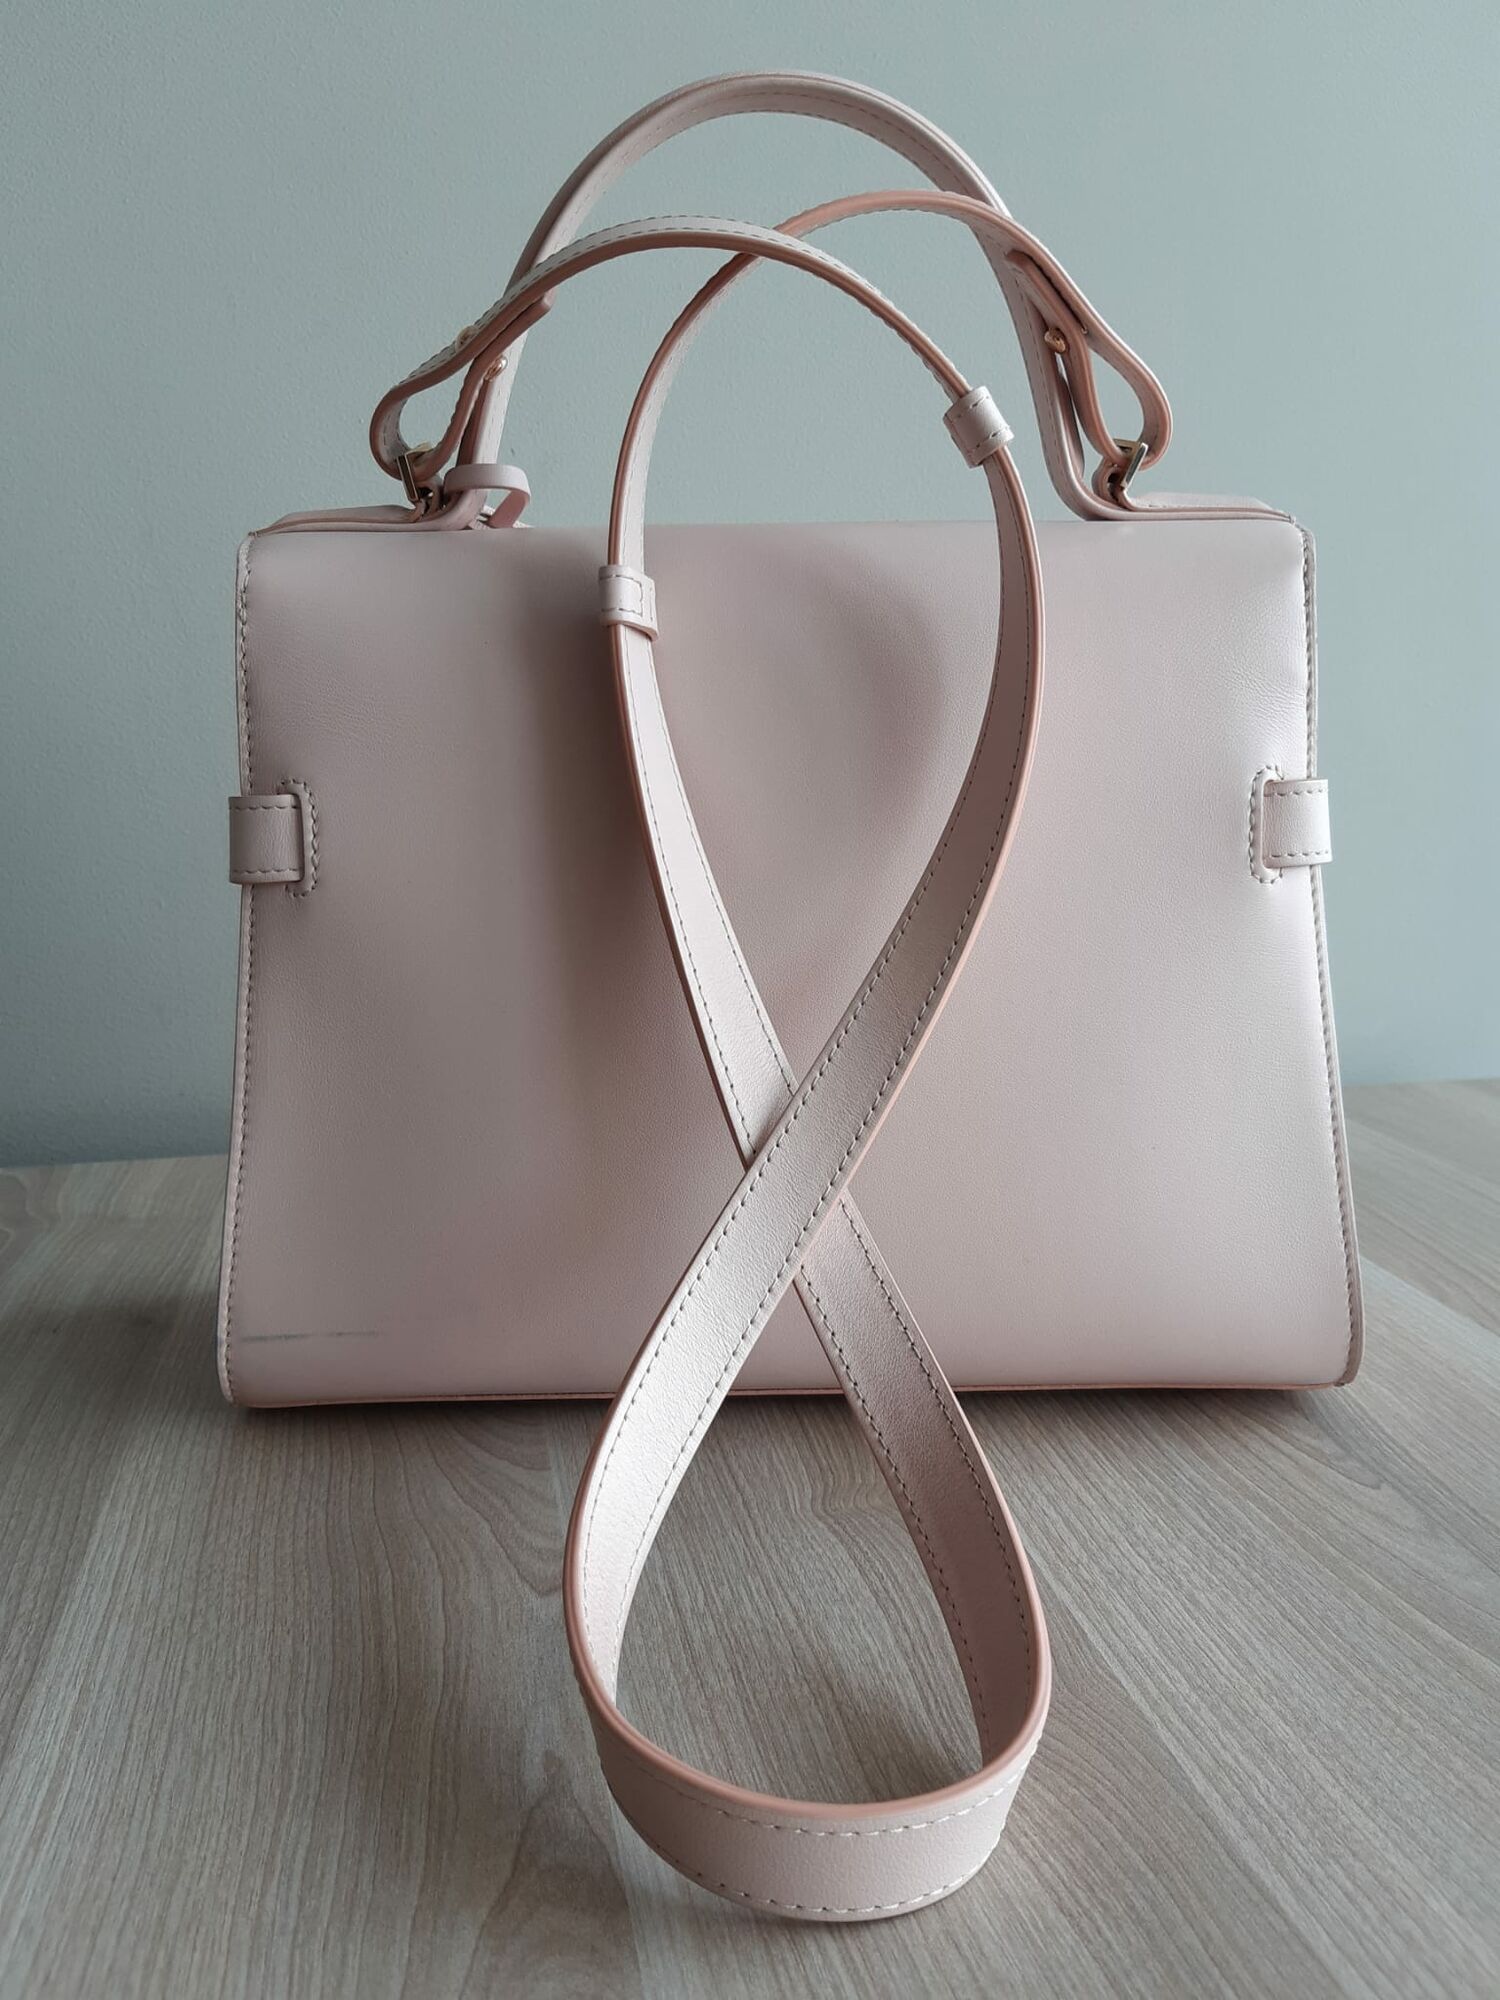 Tempête Delvaux Handbags for Women - Vestiaire Collective